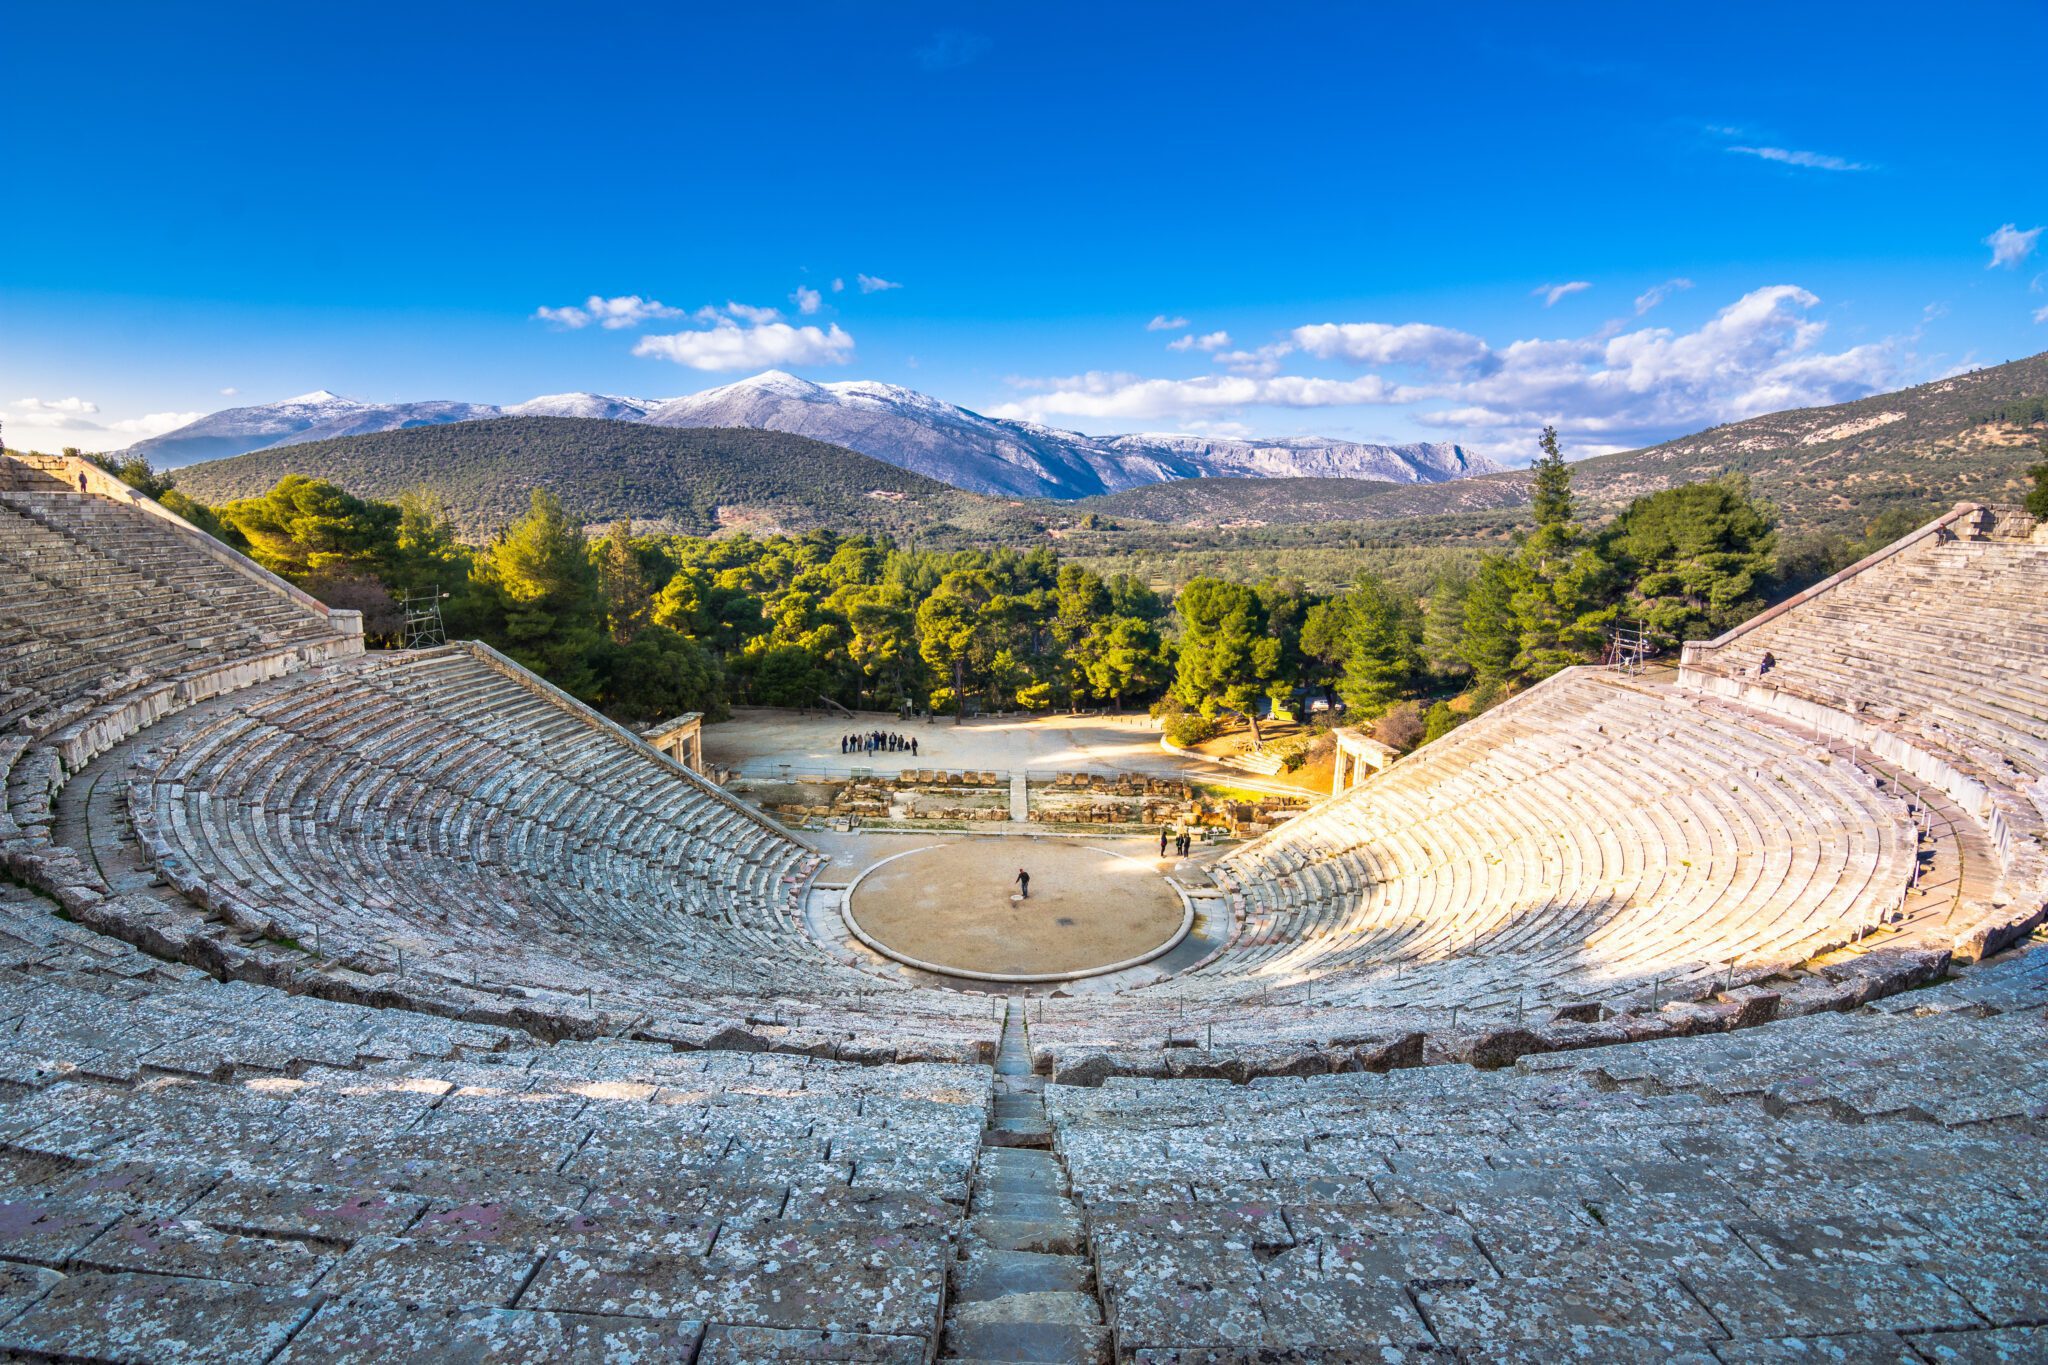 Ancient Theatre of Epidaurus